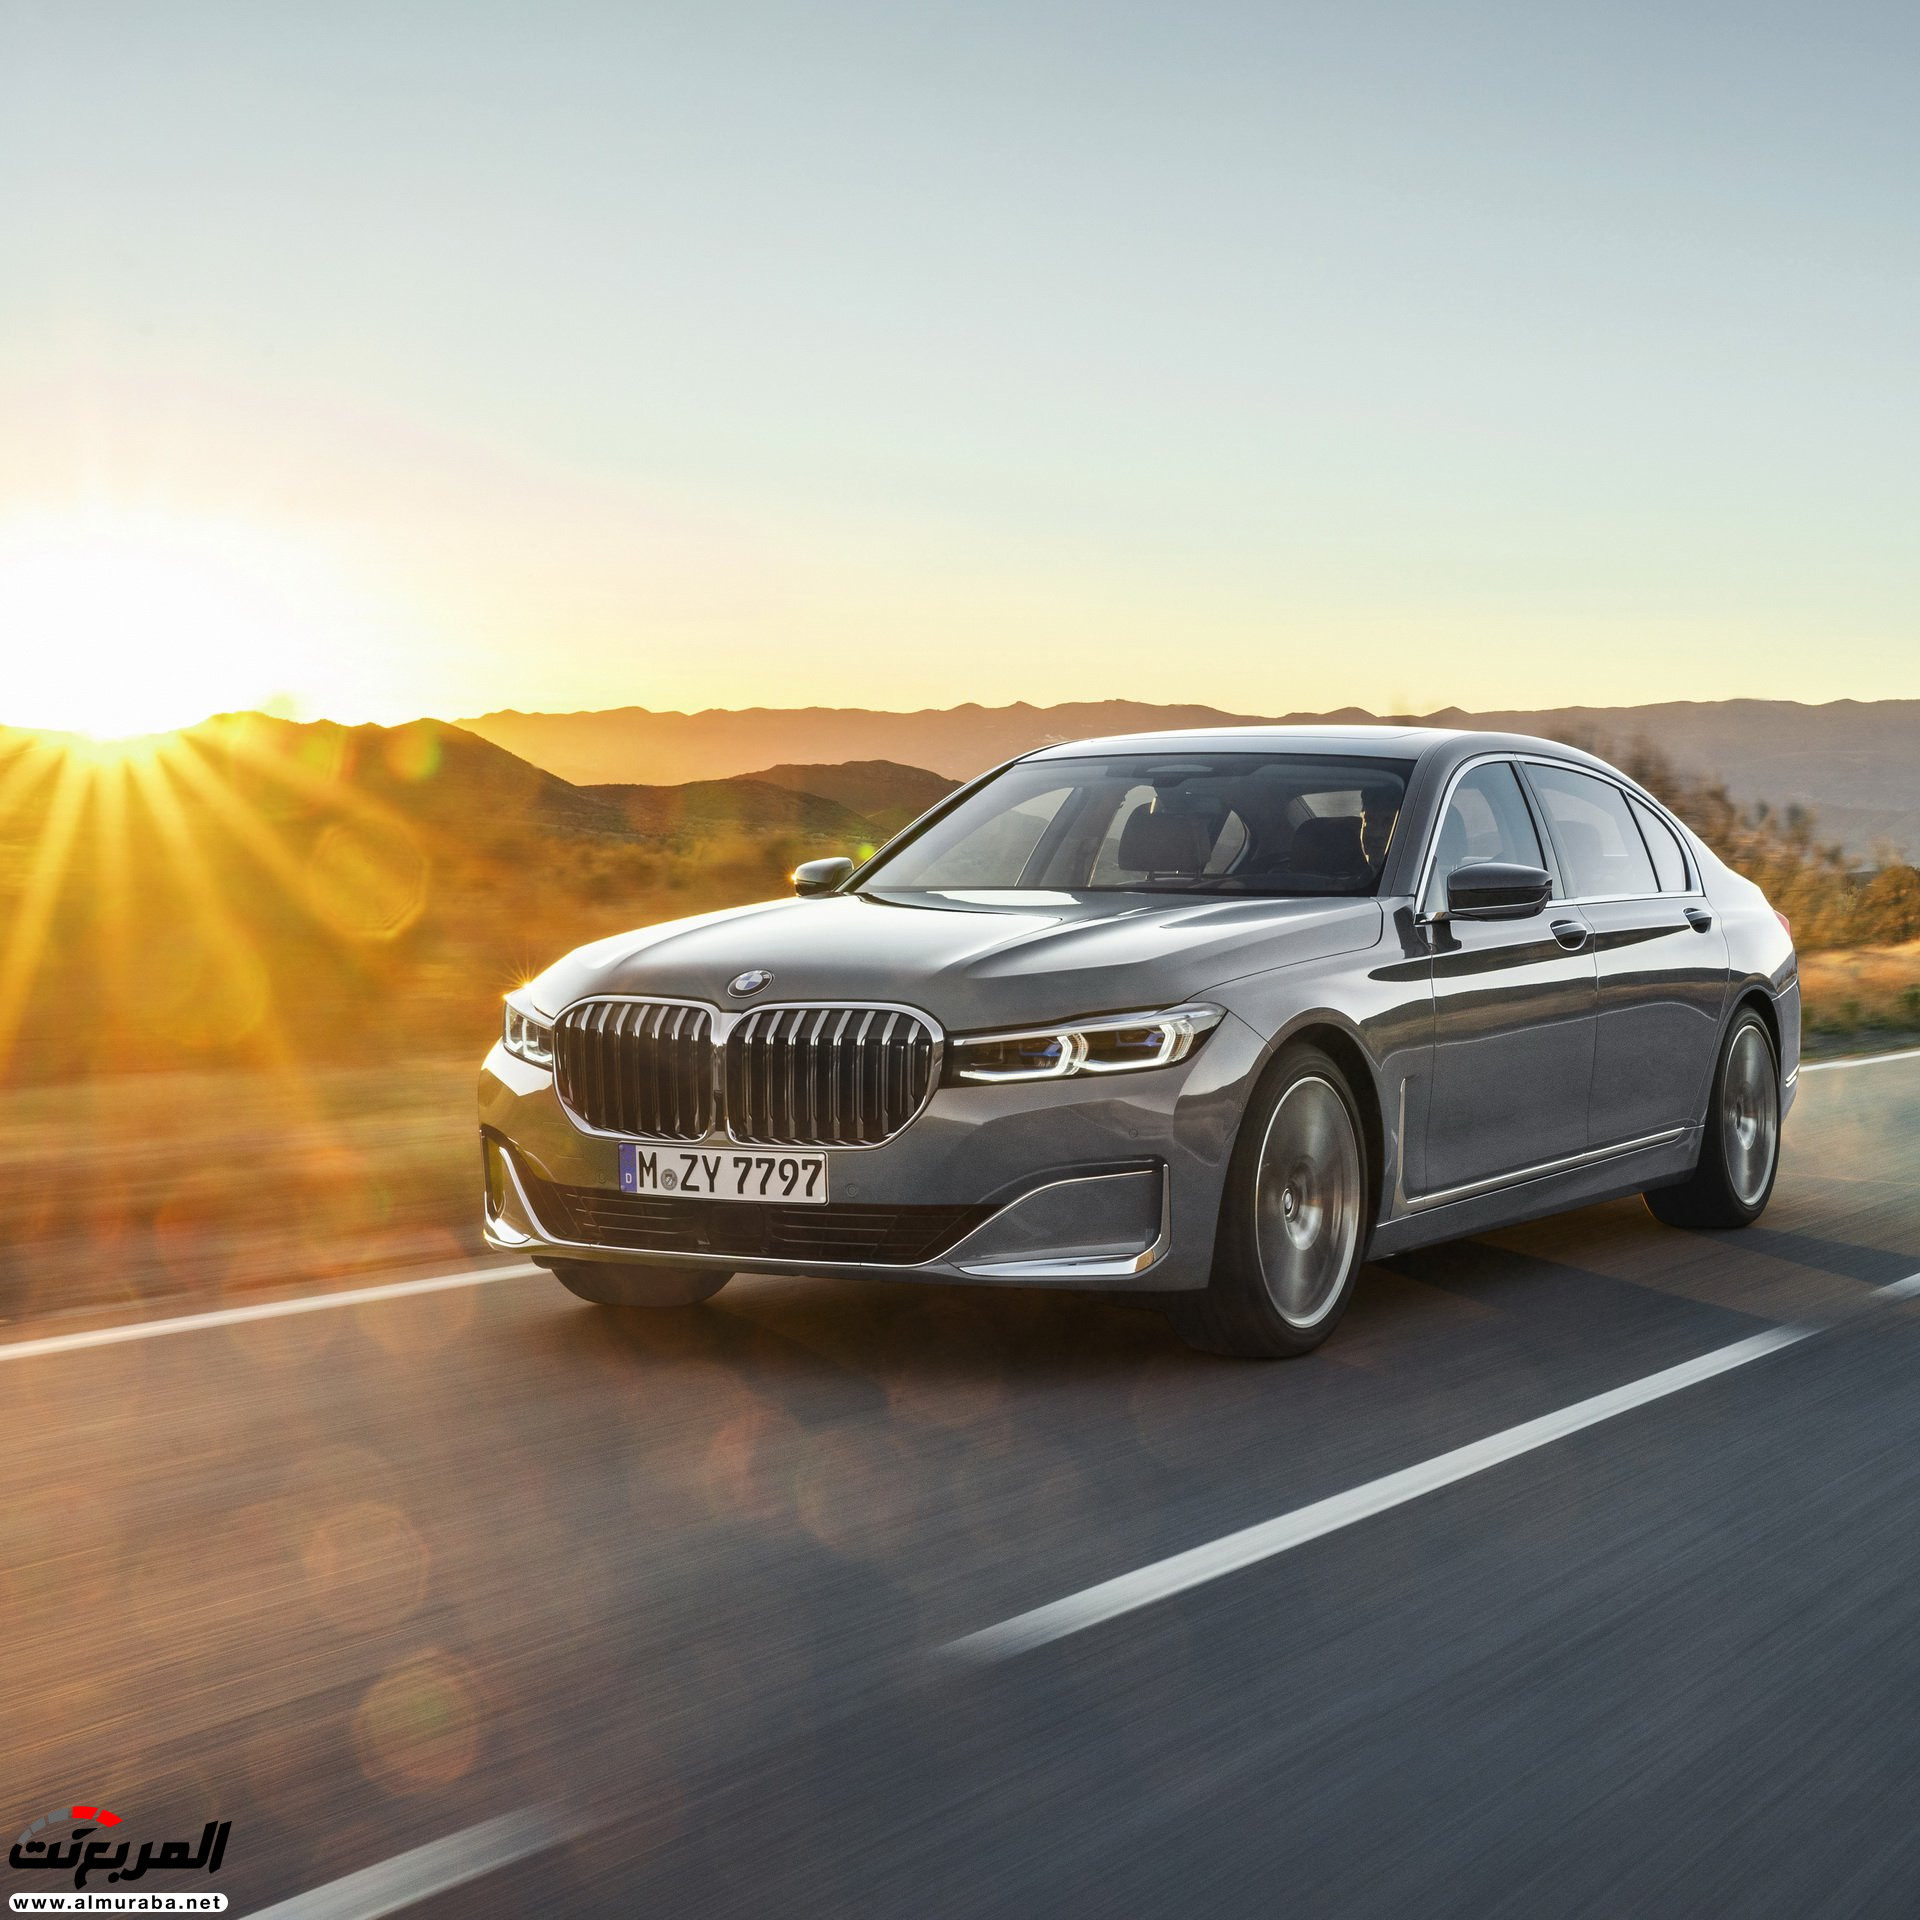 بي ام دبليو الفئة السابعة 2020 المحدثة تكشف نفسها رسمياً "صور ومواصفات" BMW 7 Series 224